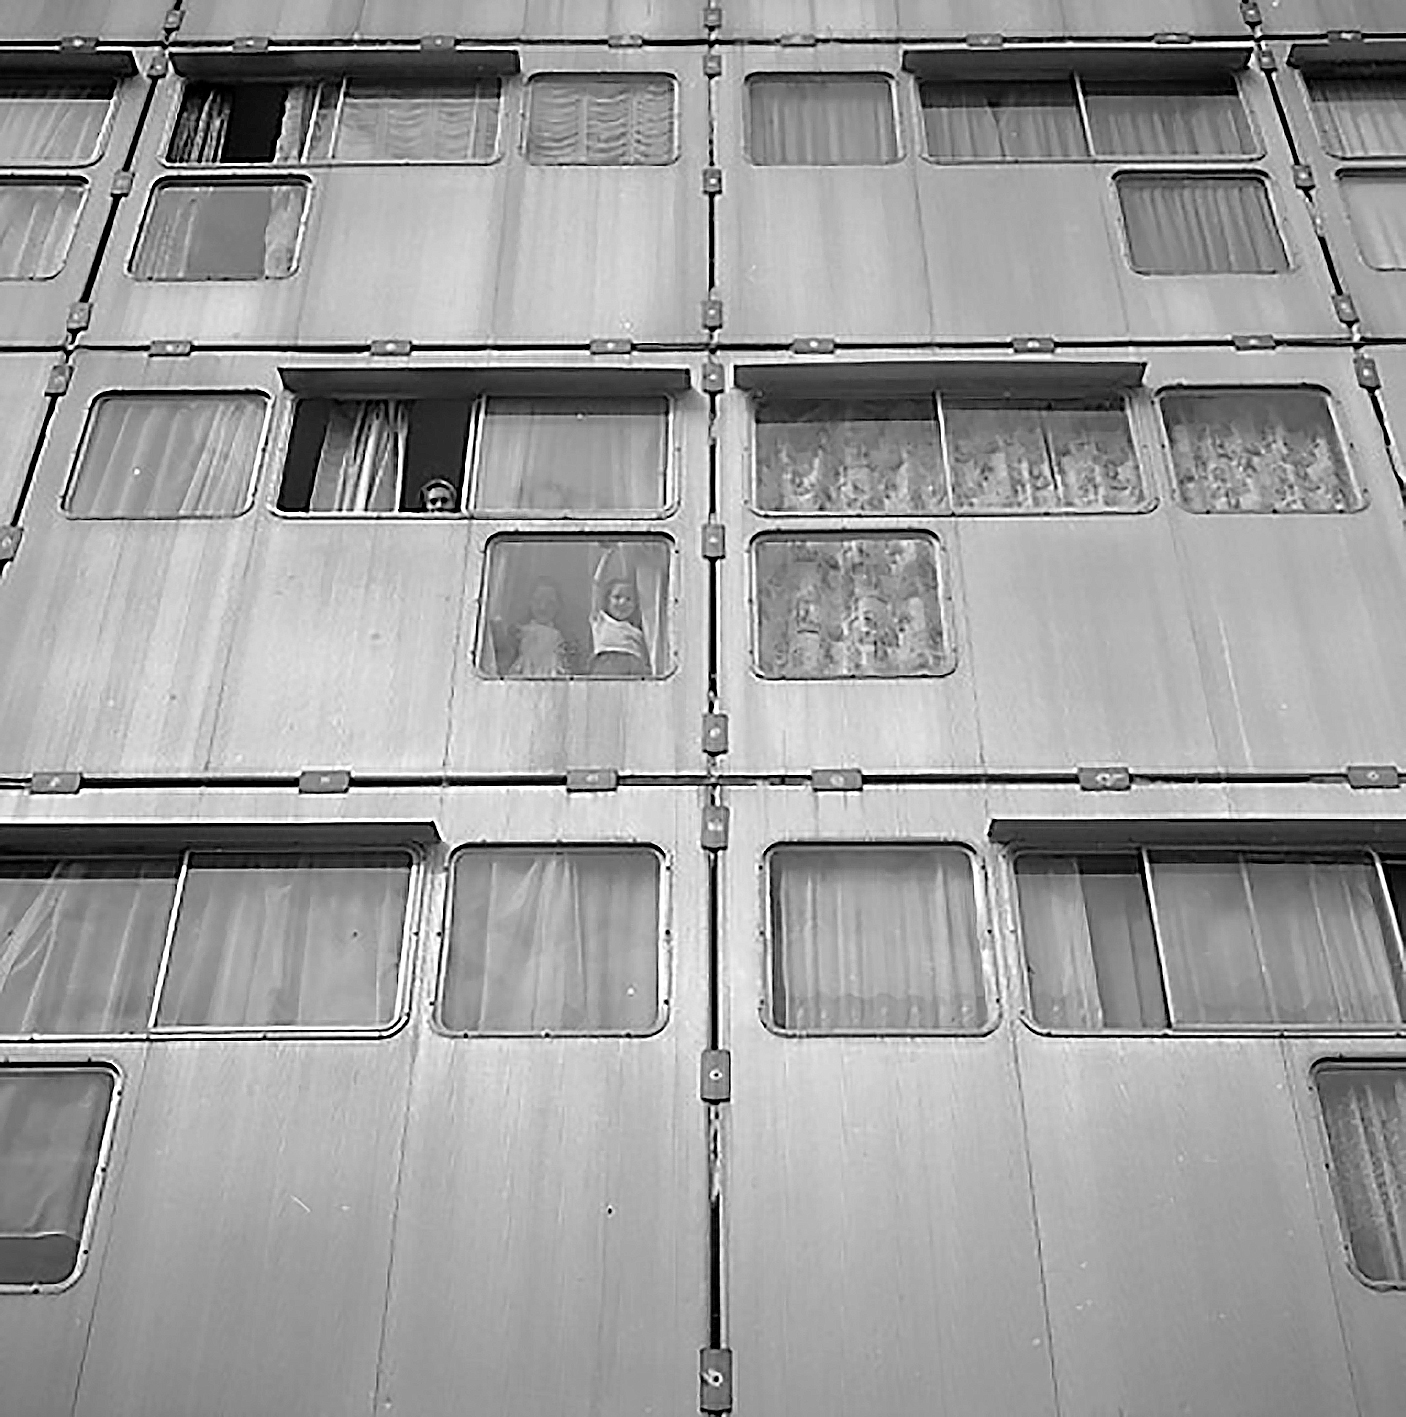 Panneaux de façade en tôle d’aluminium striée, cité H.L.M. Emmaüs, Pierre-Montillet, Blanc-Mesnil, 1957 (G. Candilis, Josic et Woods, arch.).